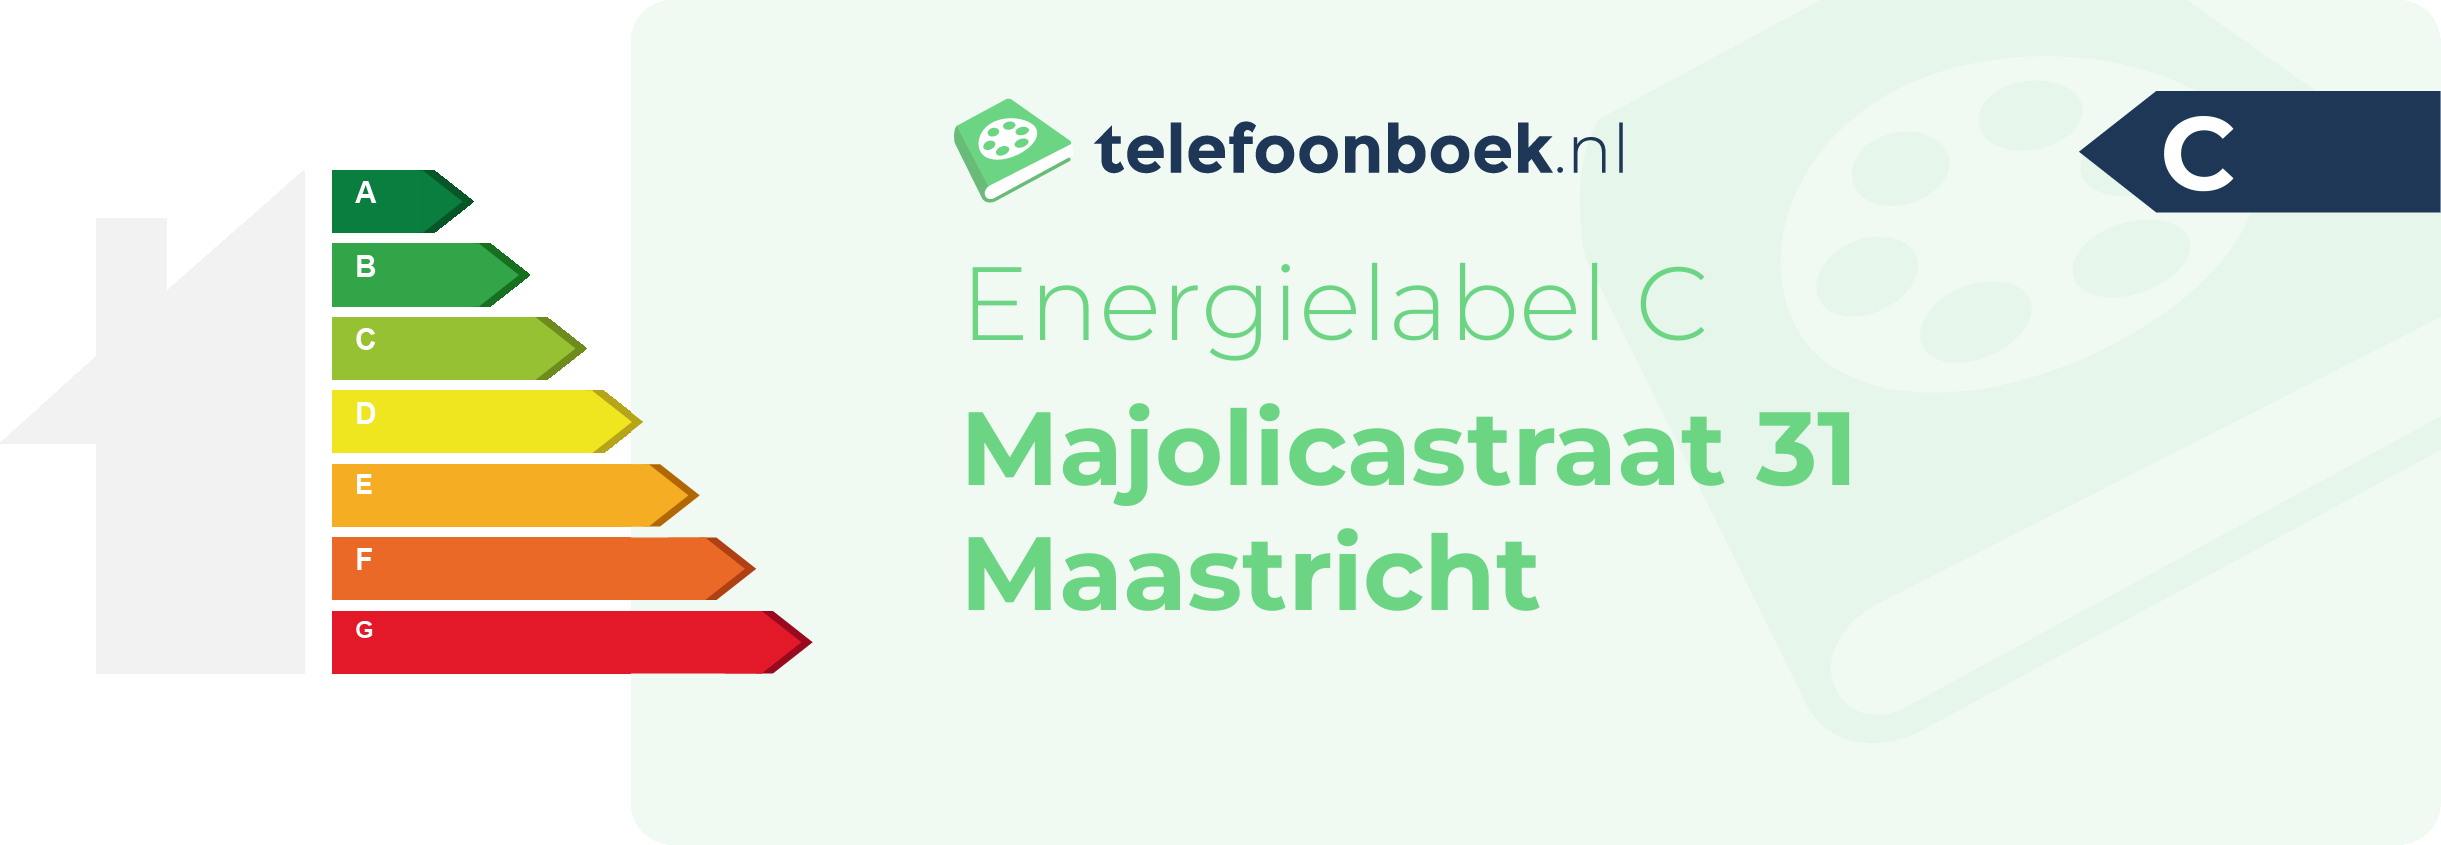 Energielabel Majolicastraat 31 Maastricht